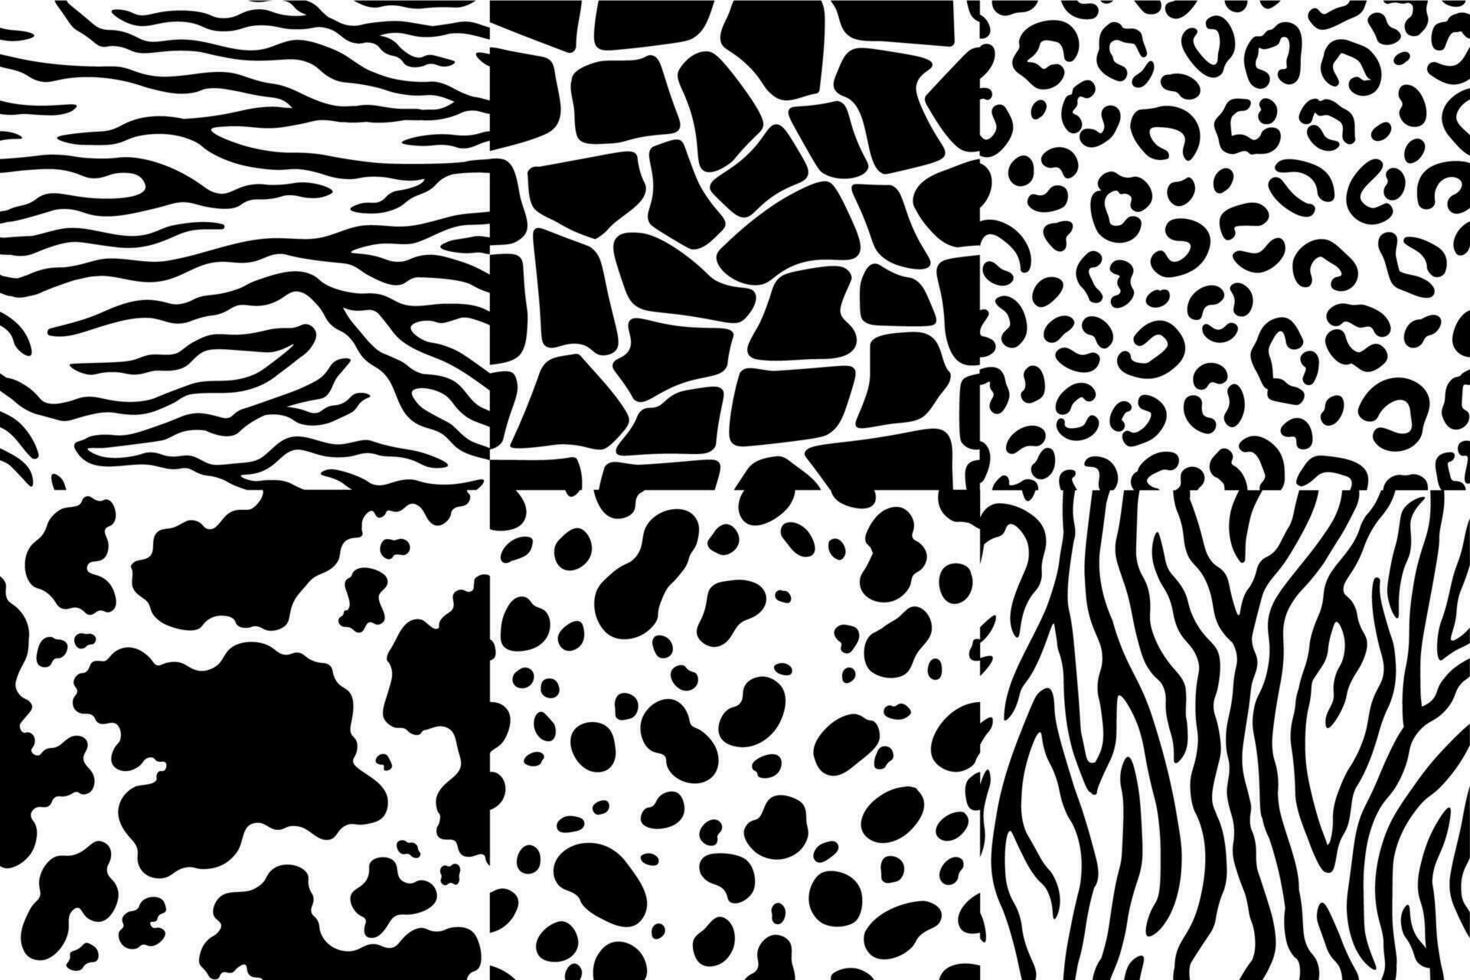 dier huid patroon. dieren in het wild zebra textuur, tijger huid strepen en luipaard vlekken. dieren texturen naadloos patronen vector reeks